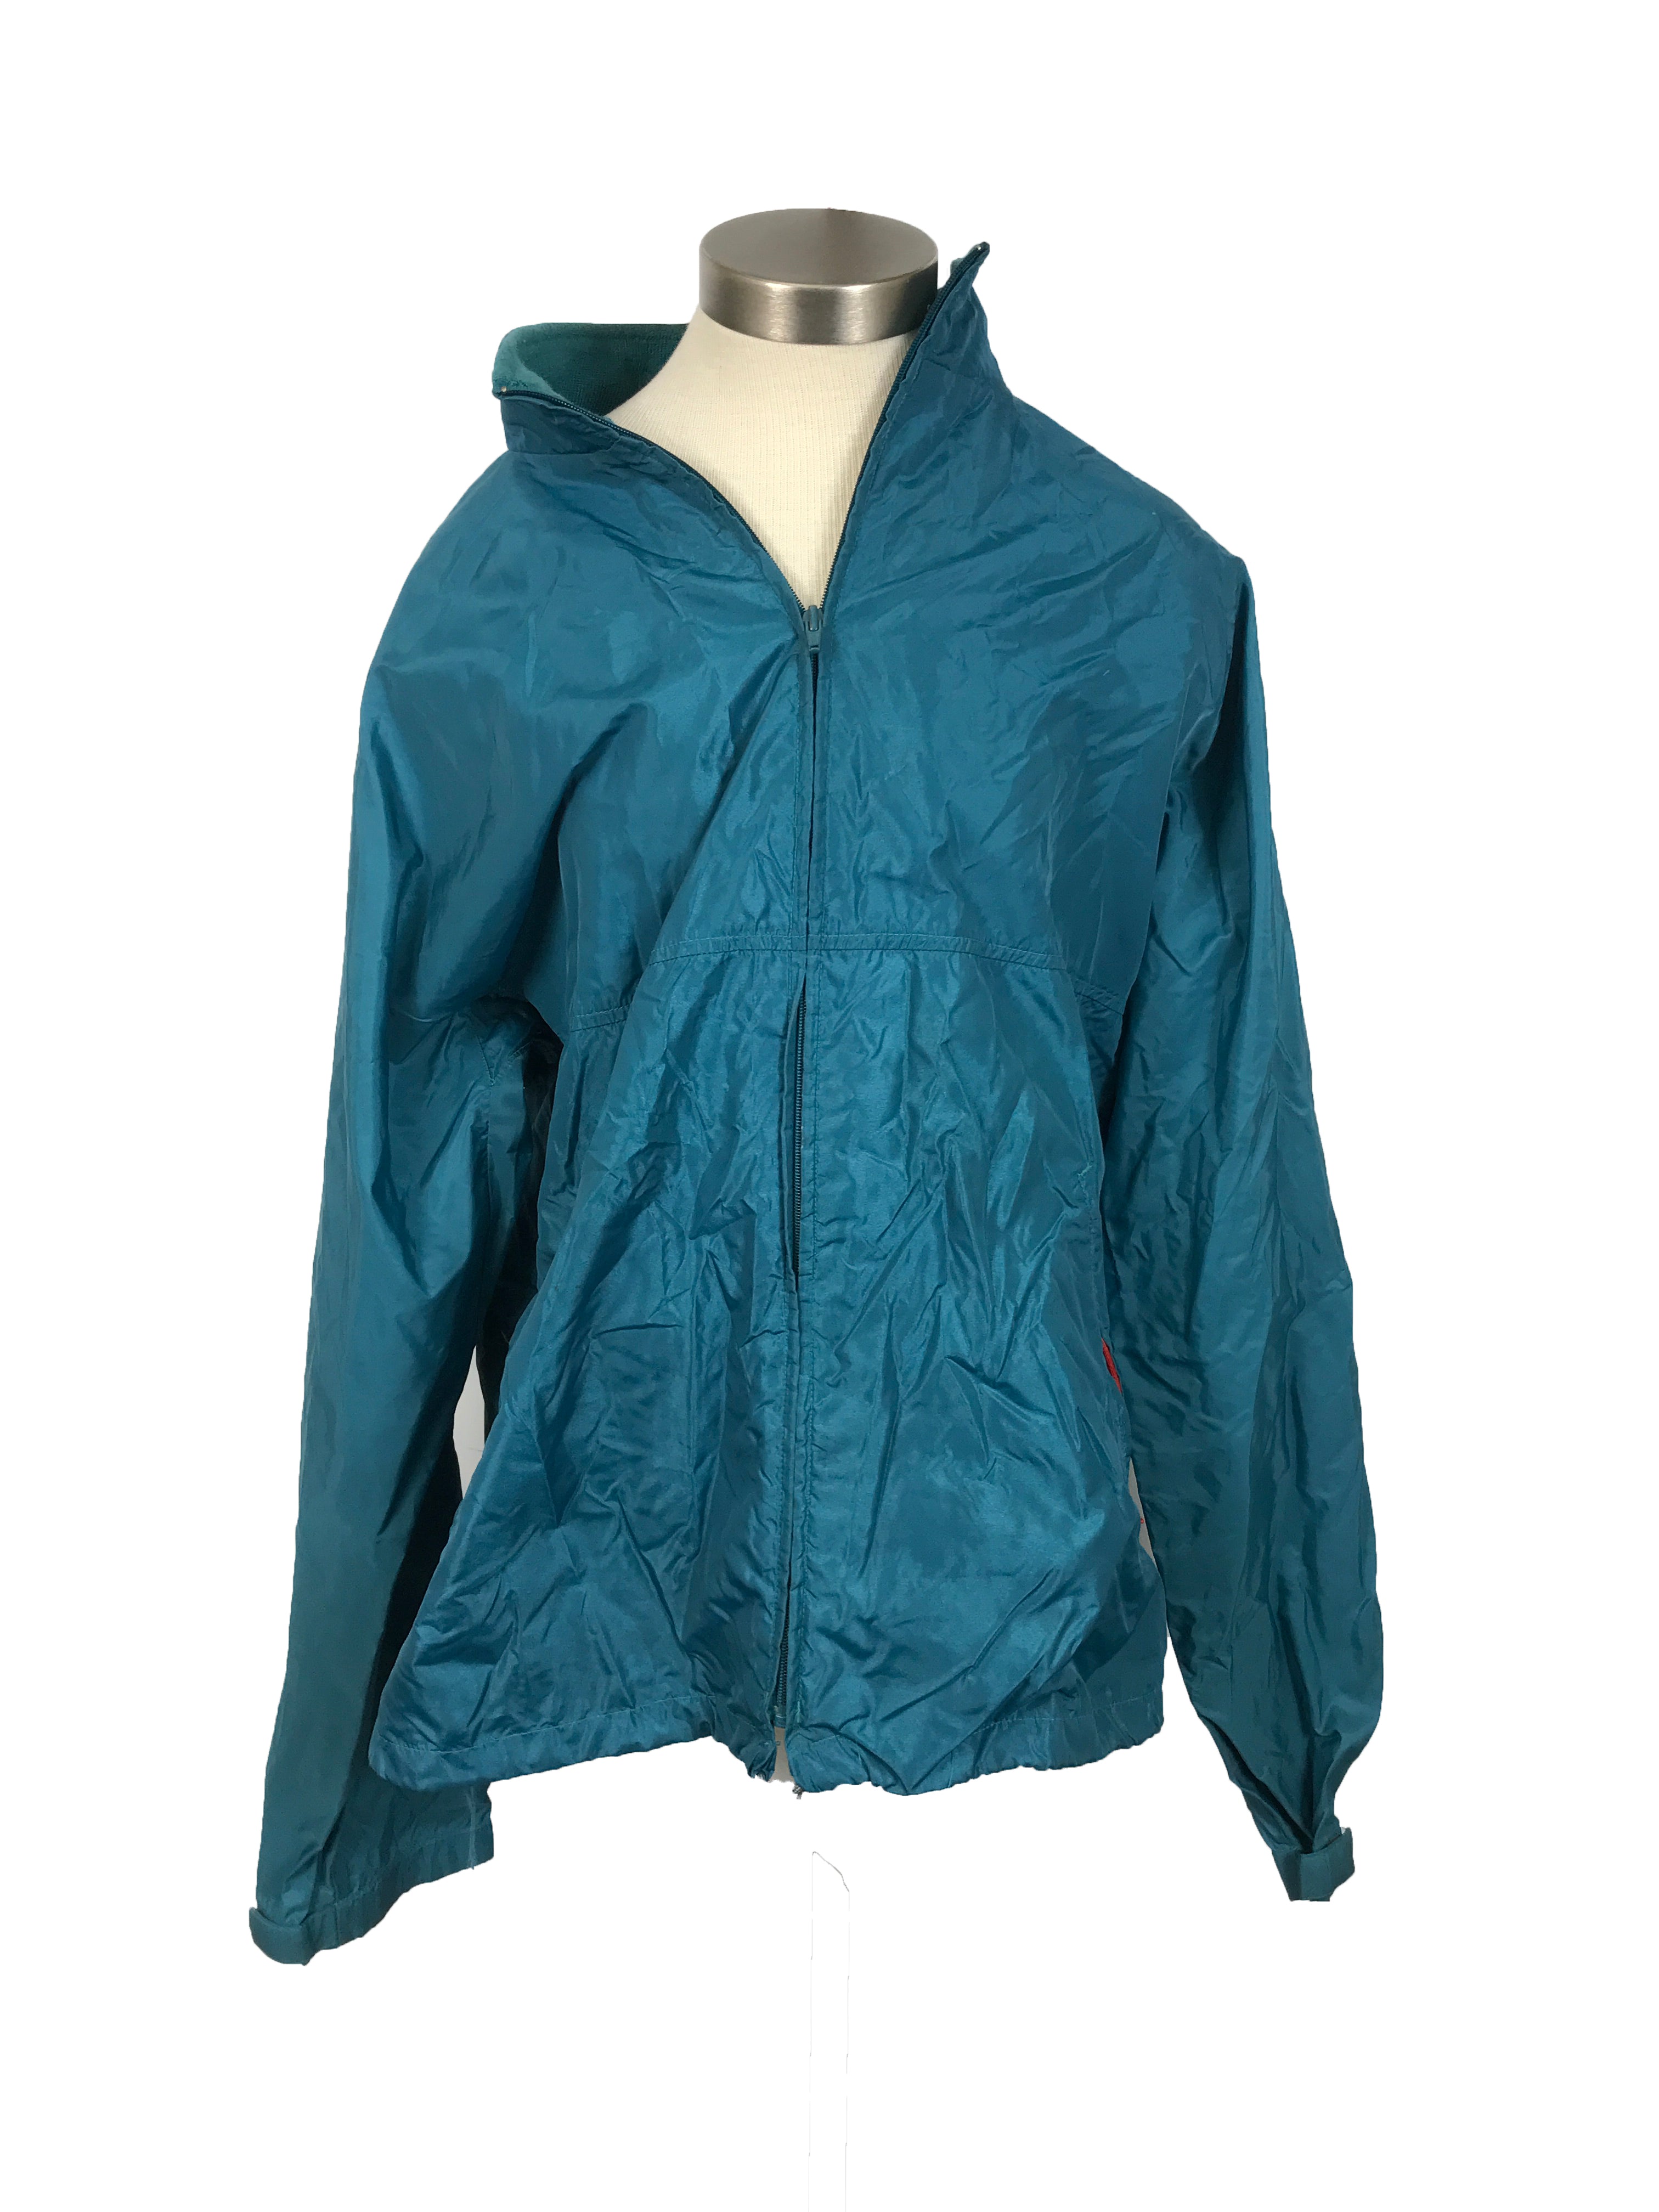 LL Bean Blue/Green Windbreaker Jacket Men's Size L